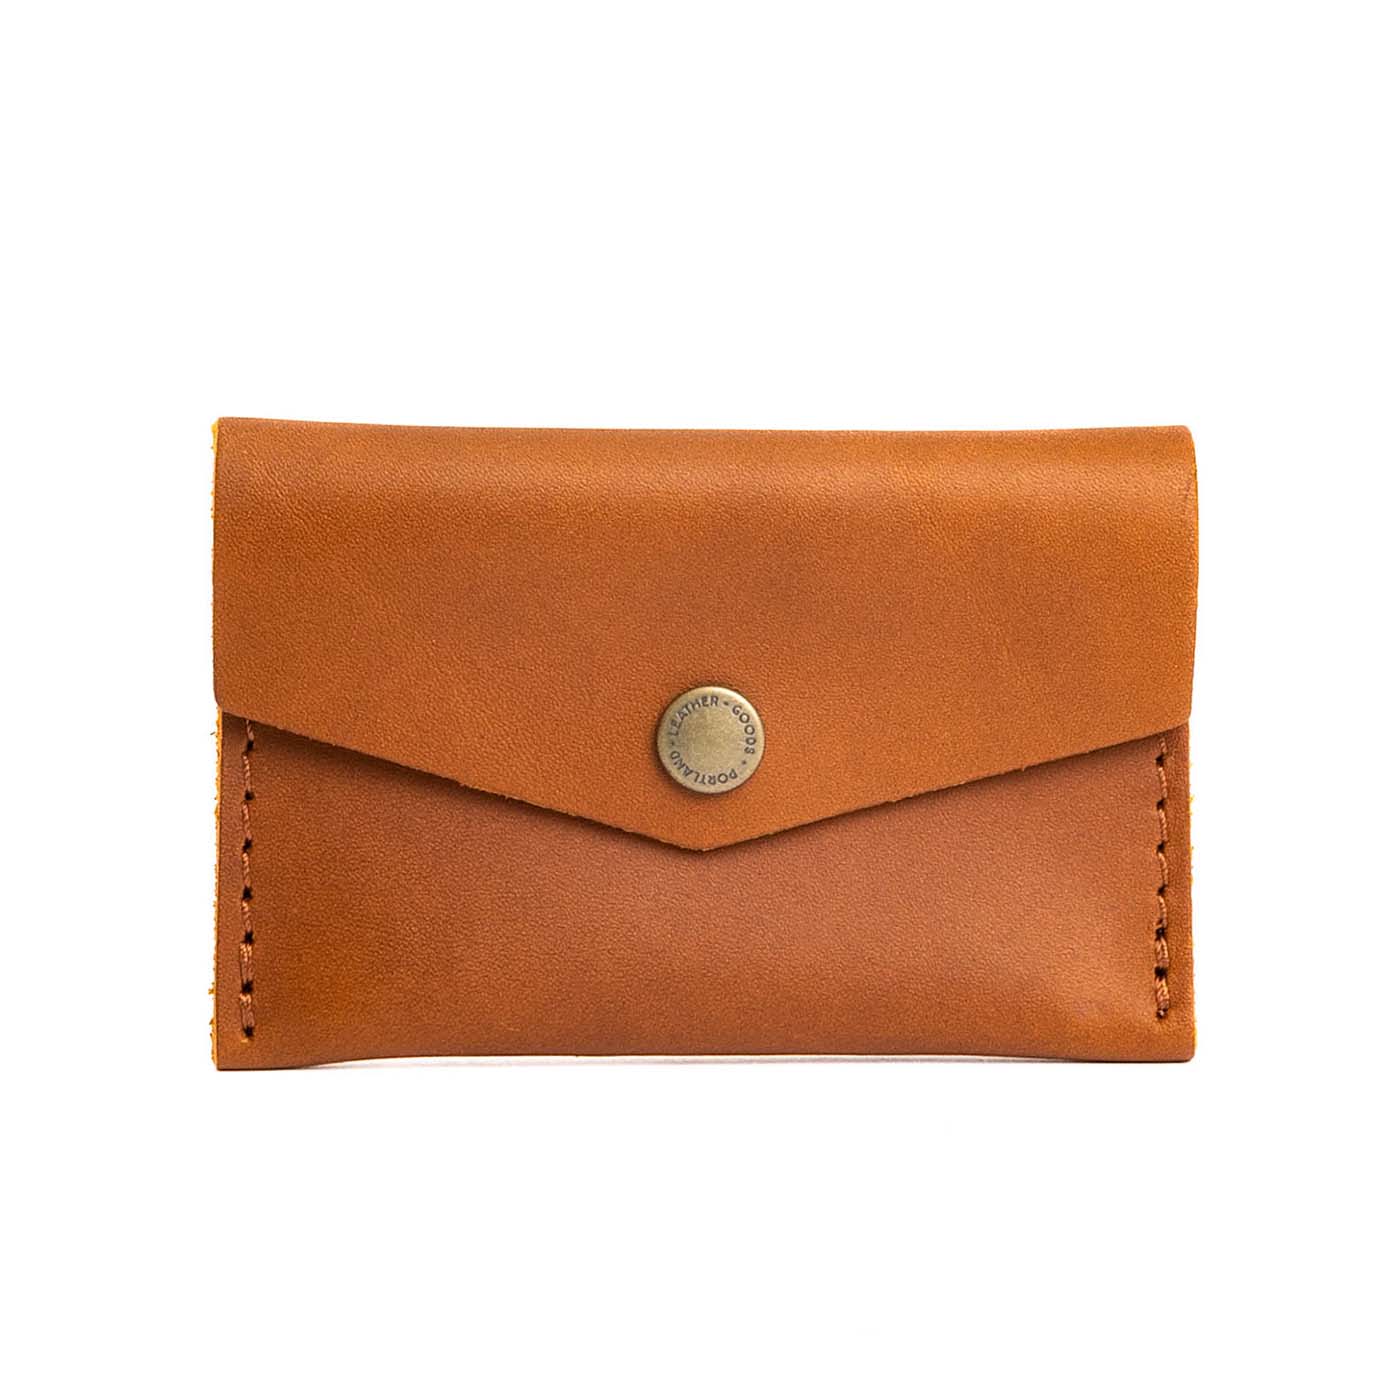 Hermes dark orange card holder wallet - September Store